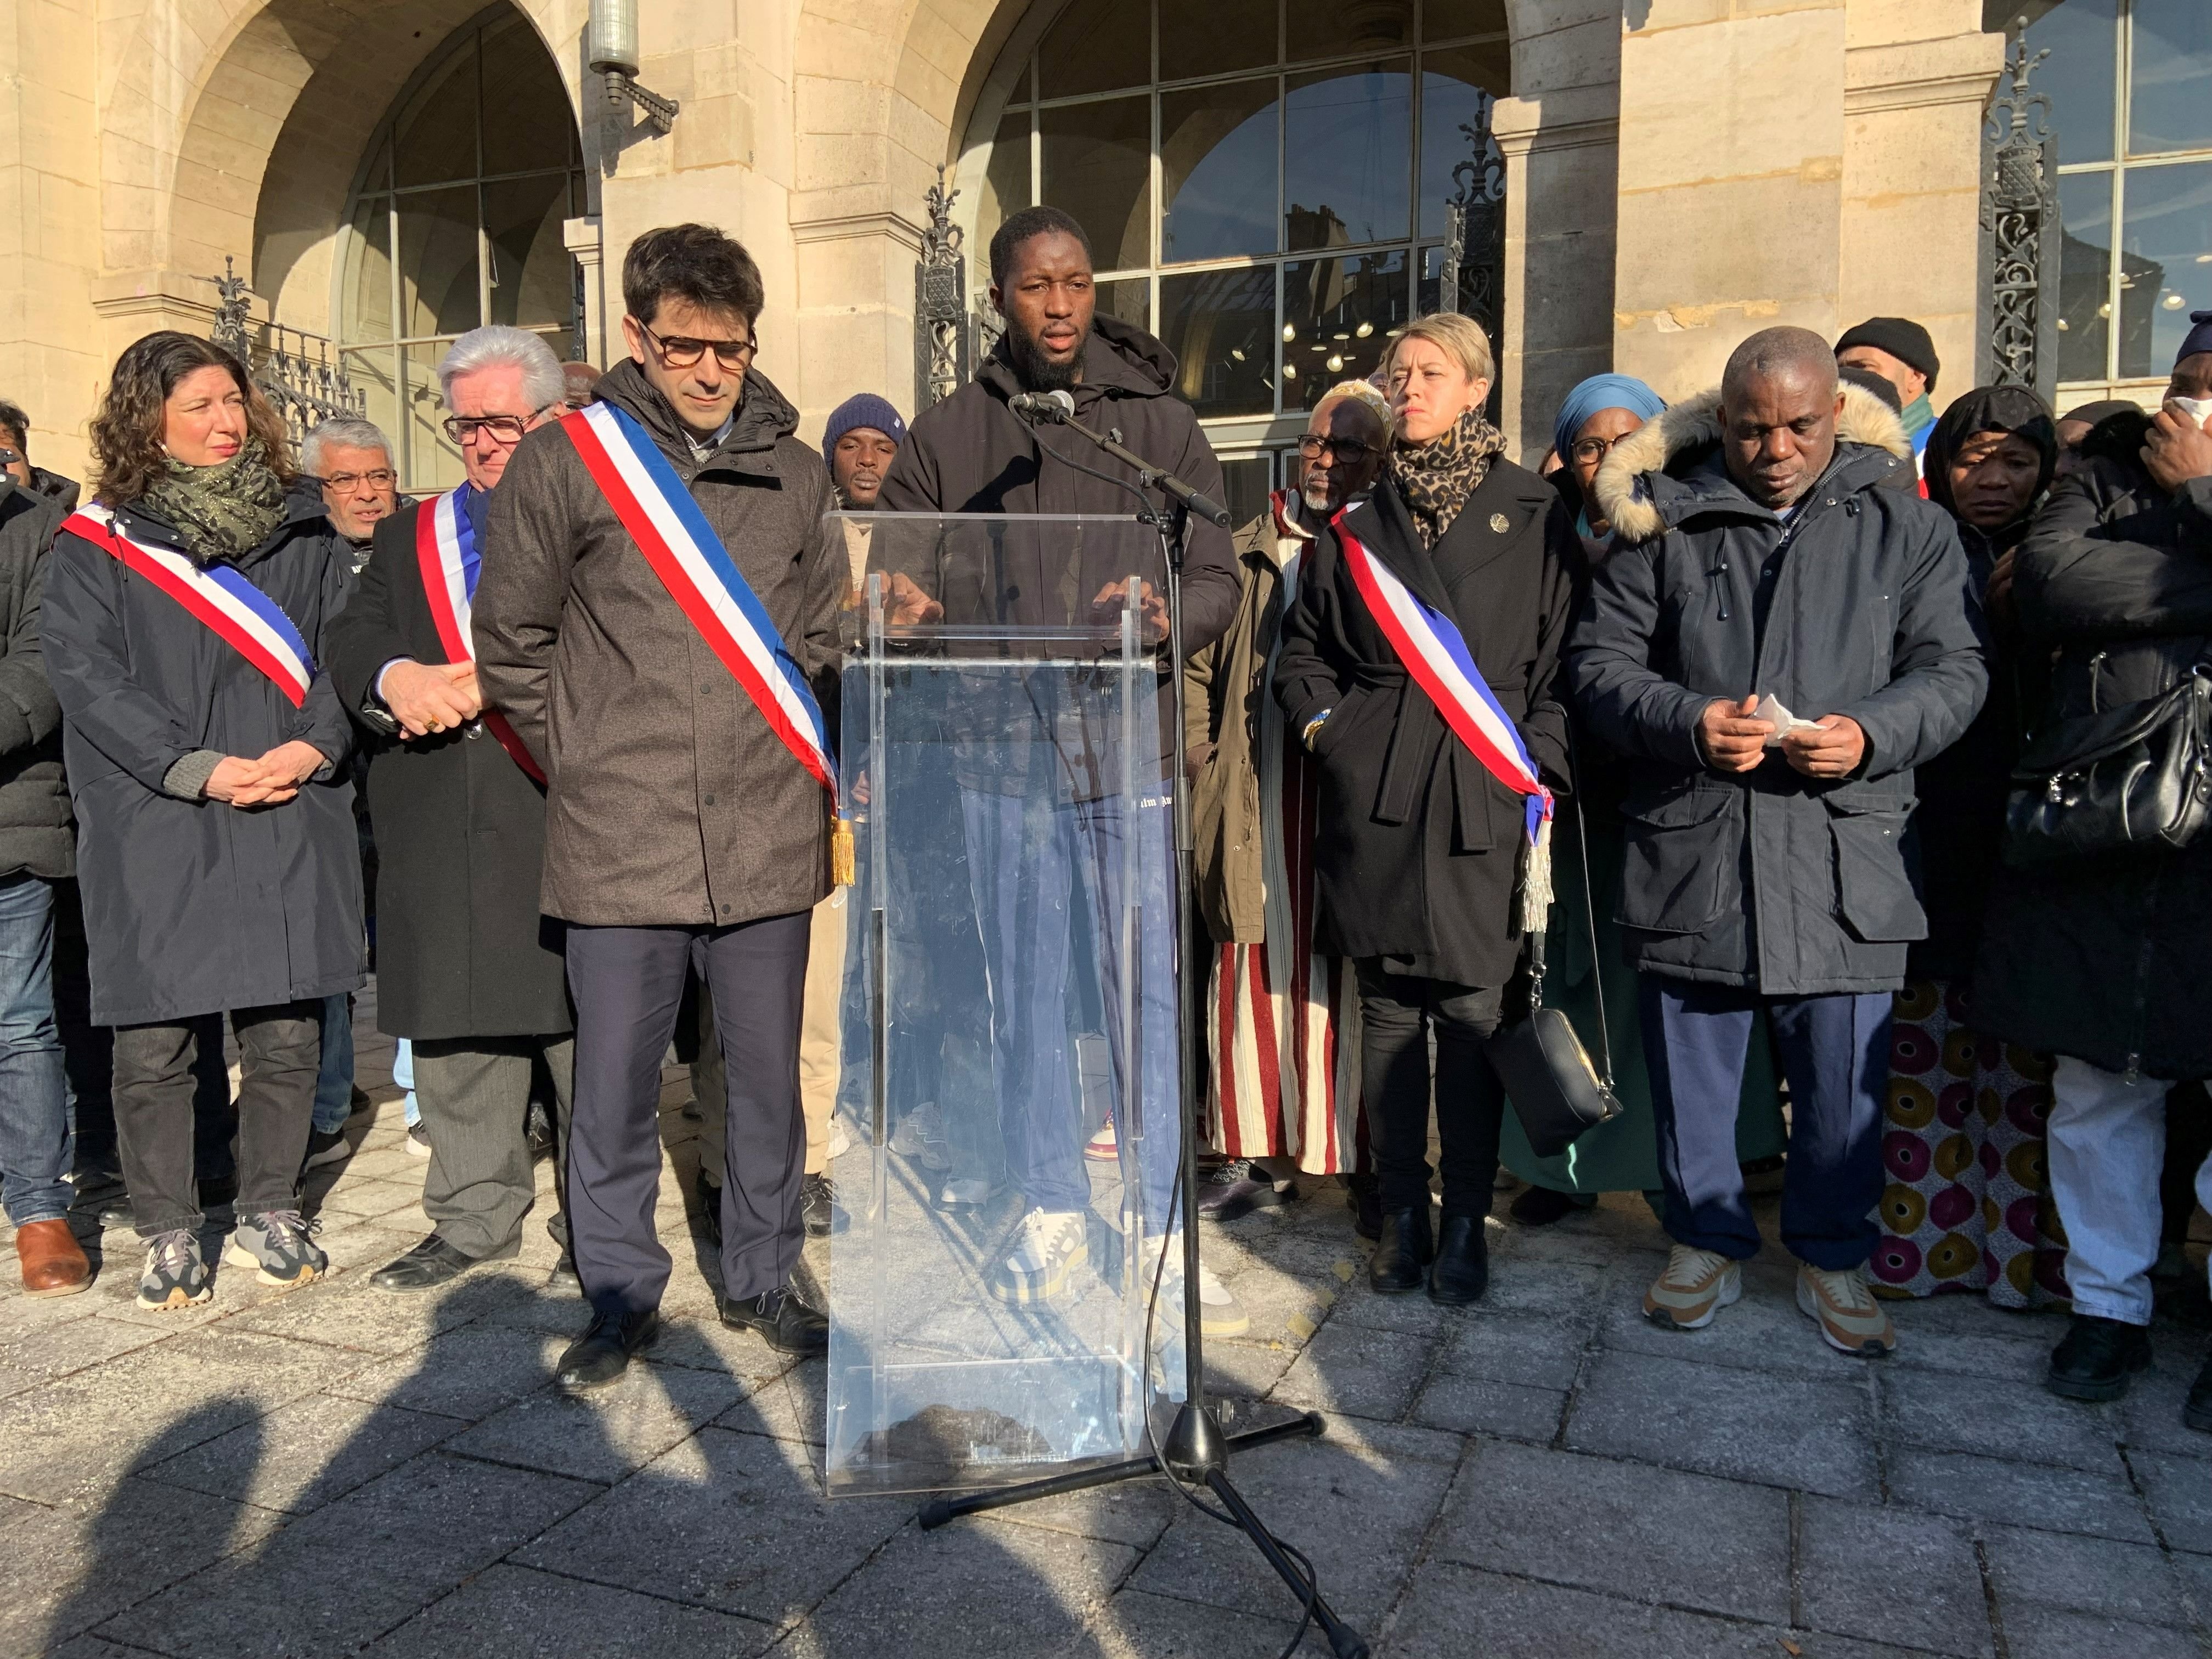 Mory, le grand-frère de Sedan, adolescent tué au couteau mercredi, a lancé un appel au calme samedi devant la mairie de Saint-Denis. LP/Caroline Piquet